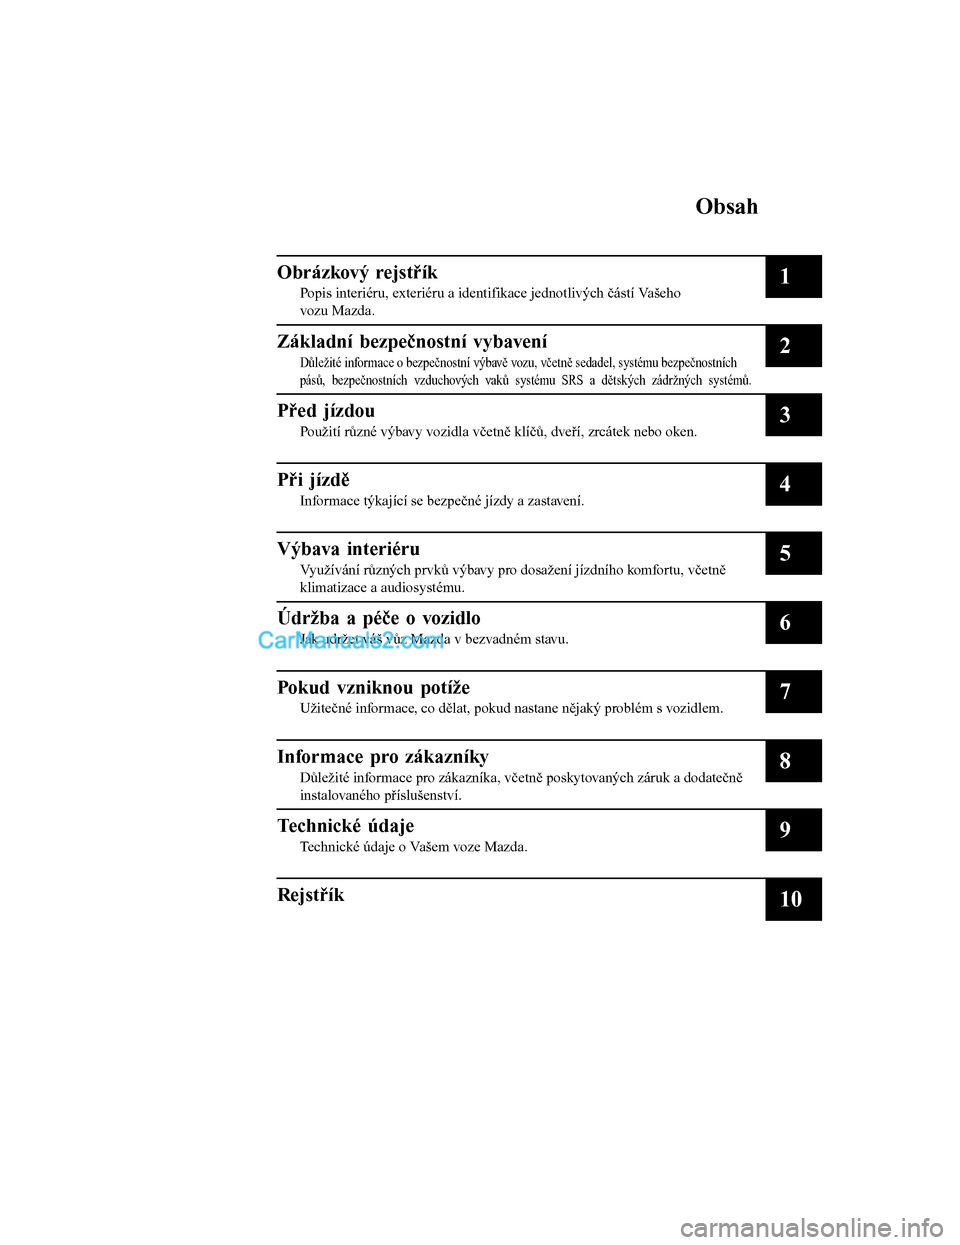 MAZDA MODEL CX-5 2017  Návod k obsluze (in Czech) Obsah
Obrázkový rejstřík
Popis interiéru, exteriéru a identifikace jednotlivých částí Vašeho
vozu Mazda.1
Základní bezpečnostní vybavení
Důležité informace o bezpečnostní výbavě